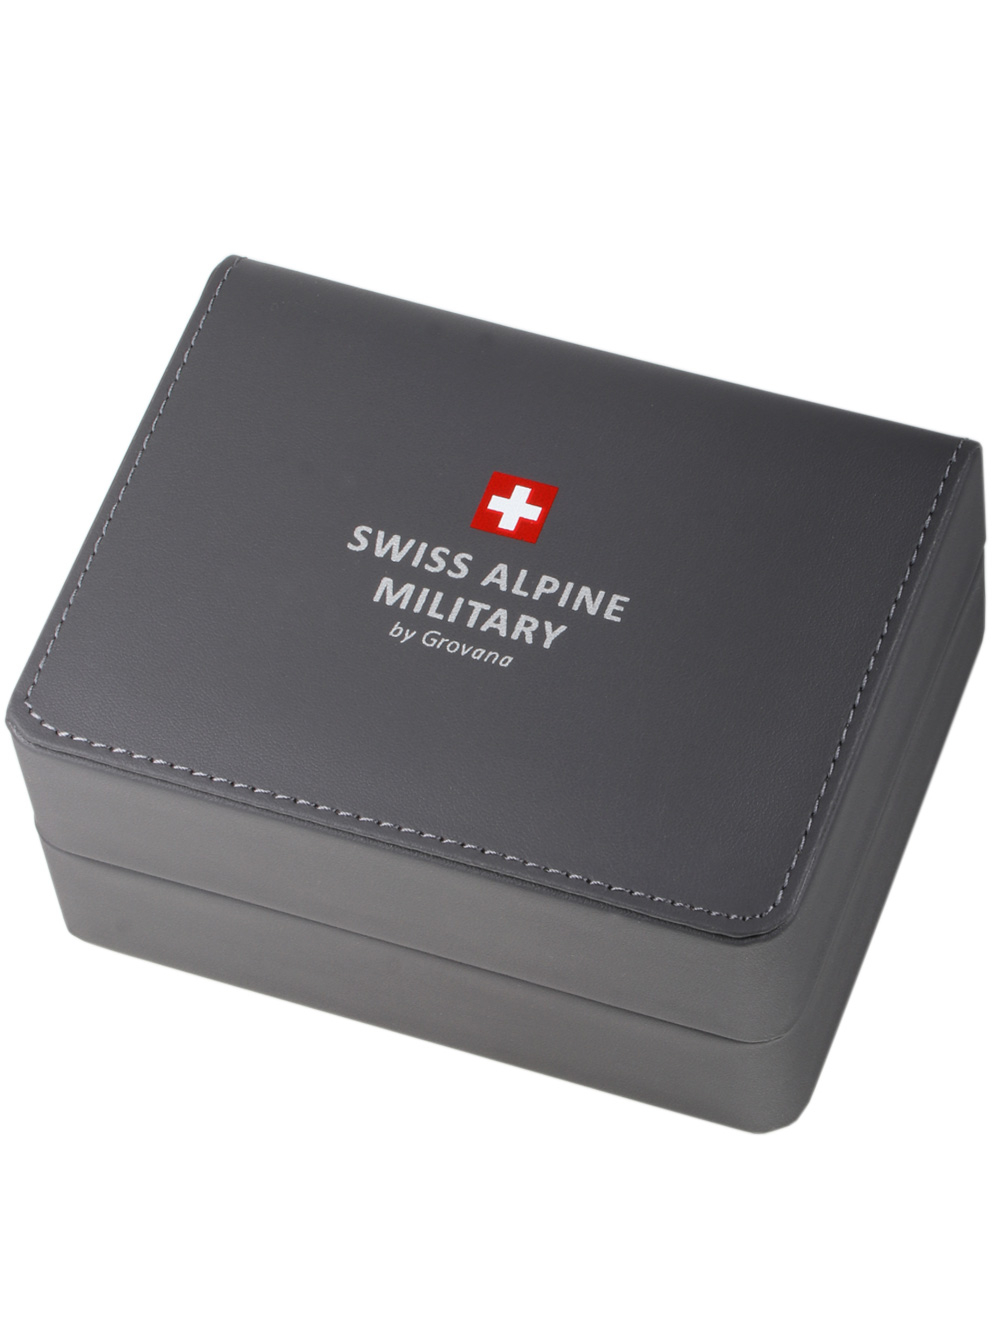 Zegarek męski Swiss Alpine Military 7095.2134